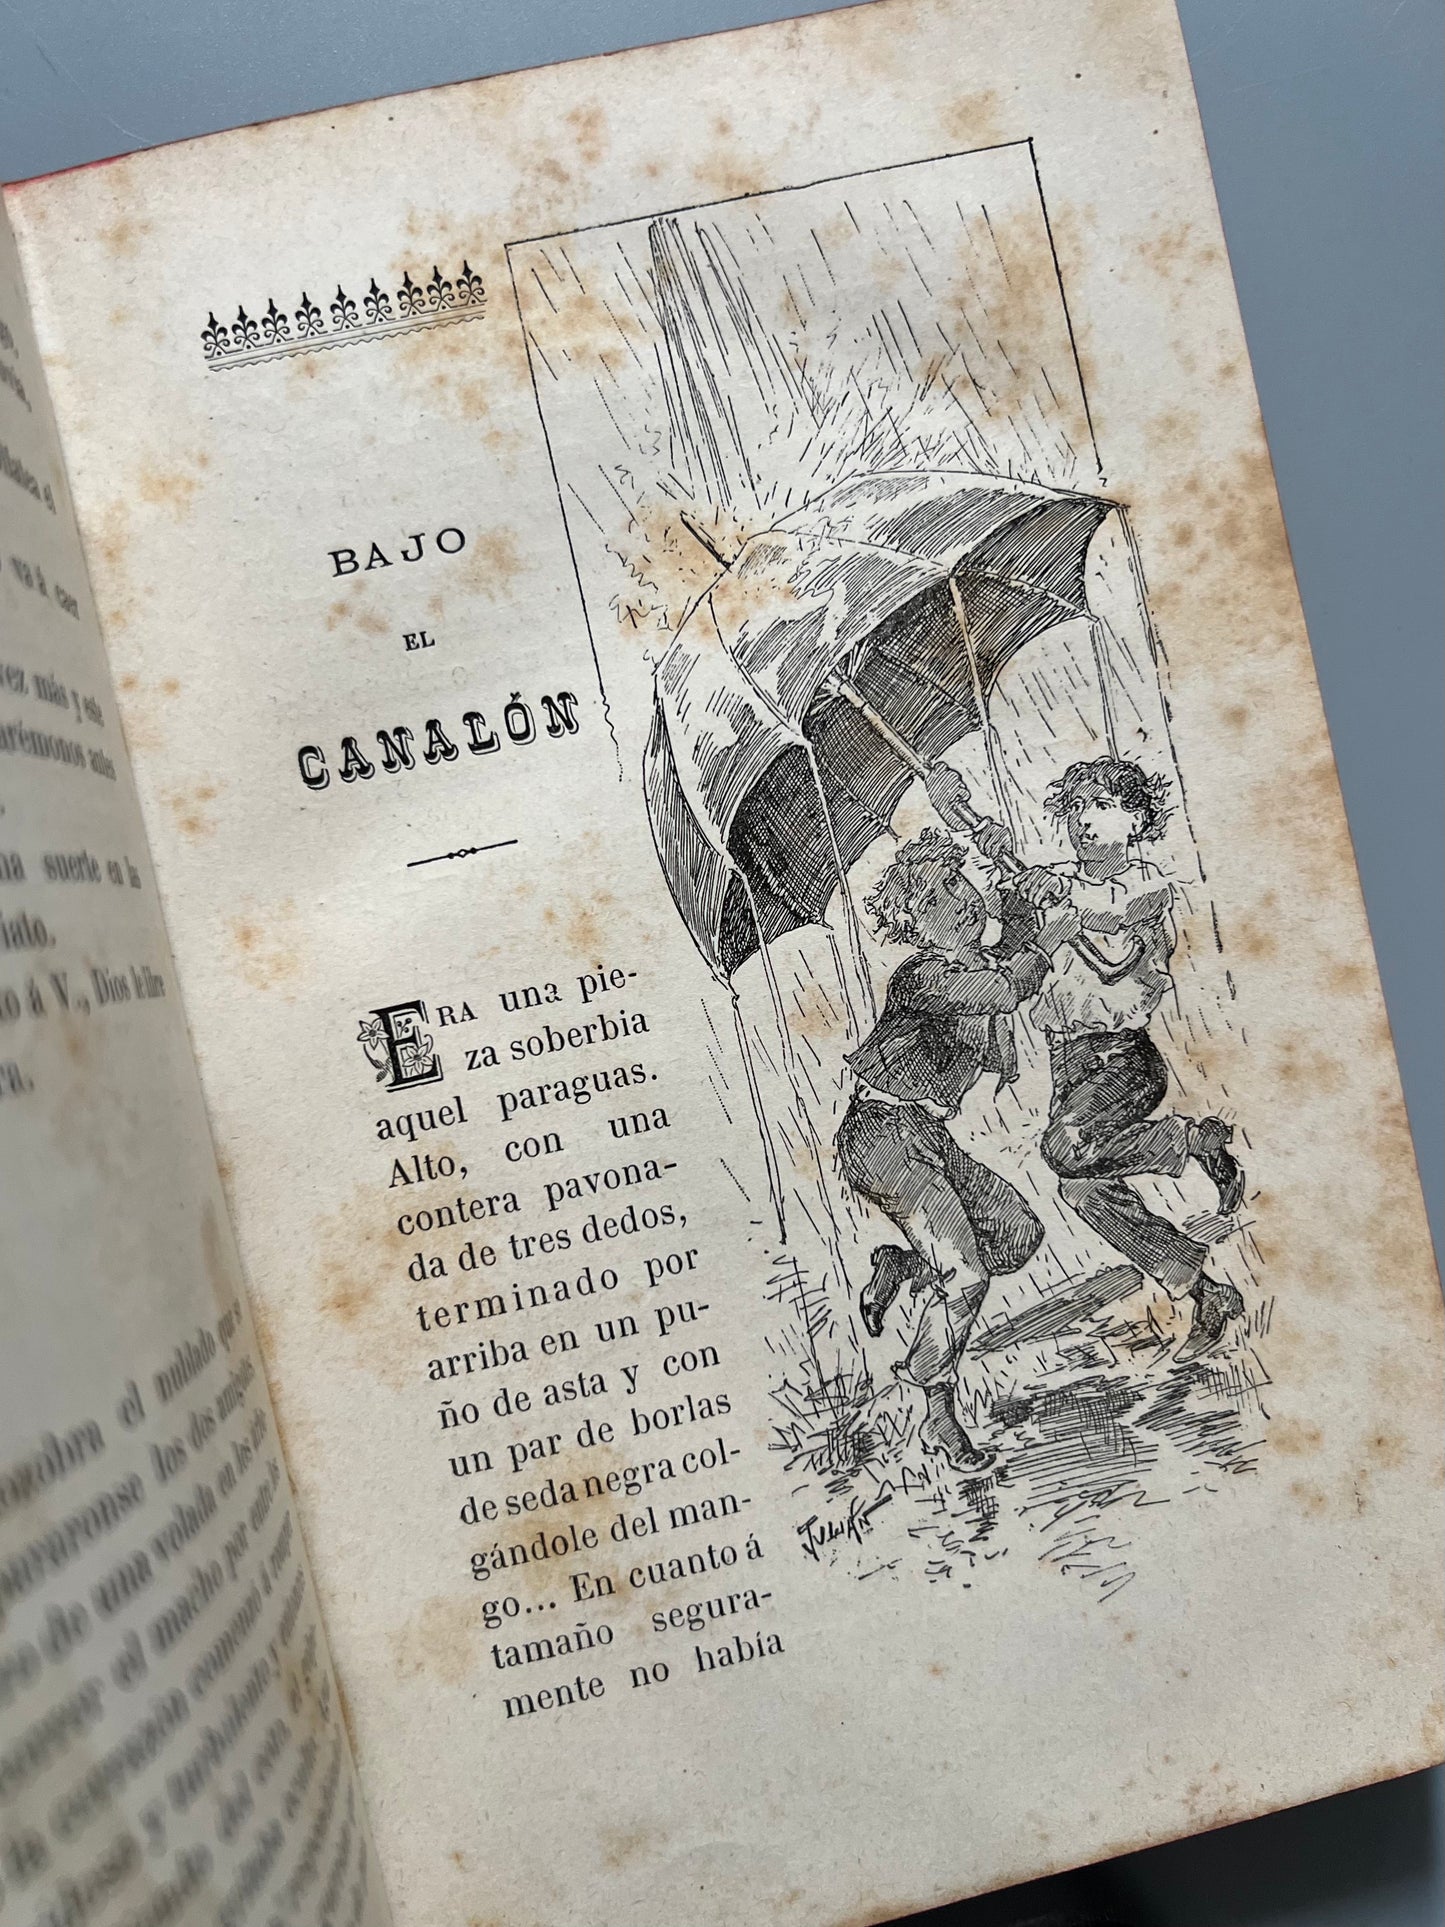 Niños y pájaros, novelas infantiles, Alfonso Pérez Nieva - Librería de Antonio J. Bastinos, 1892